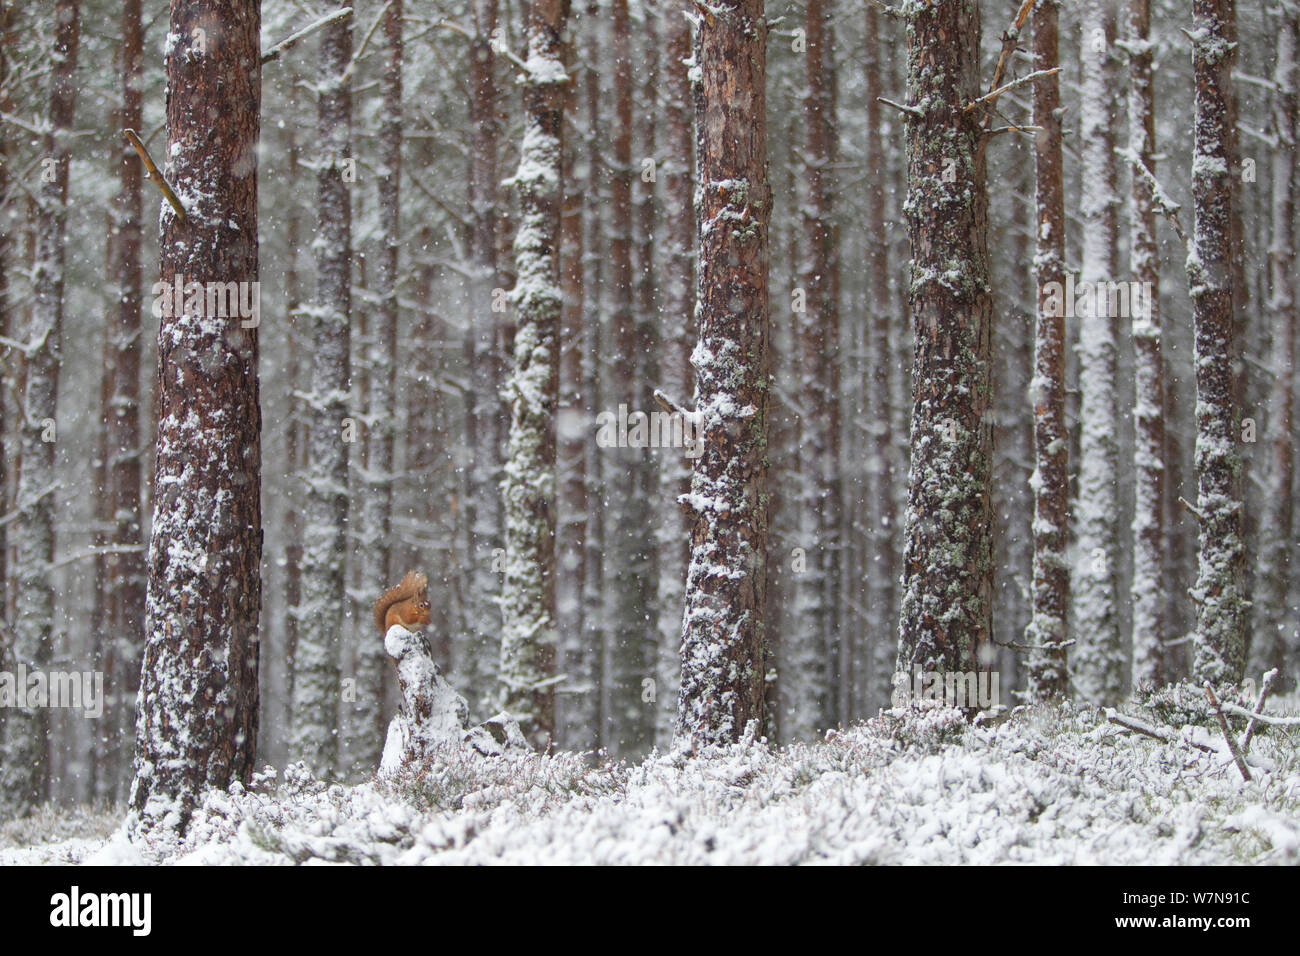 Red scoiattolo (Sciurus vulgaris) in presenza di neve sulla foresta di pini. Glenfeshie, Scozia, gennaio. Foto Stock